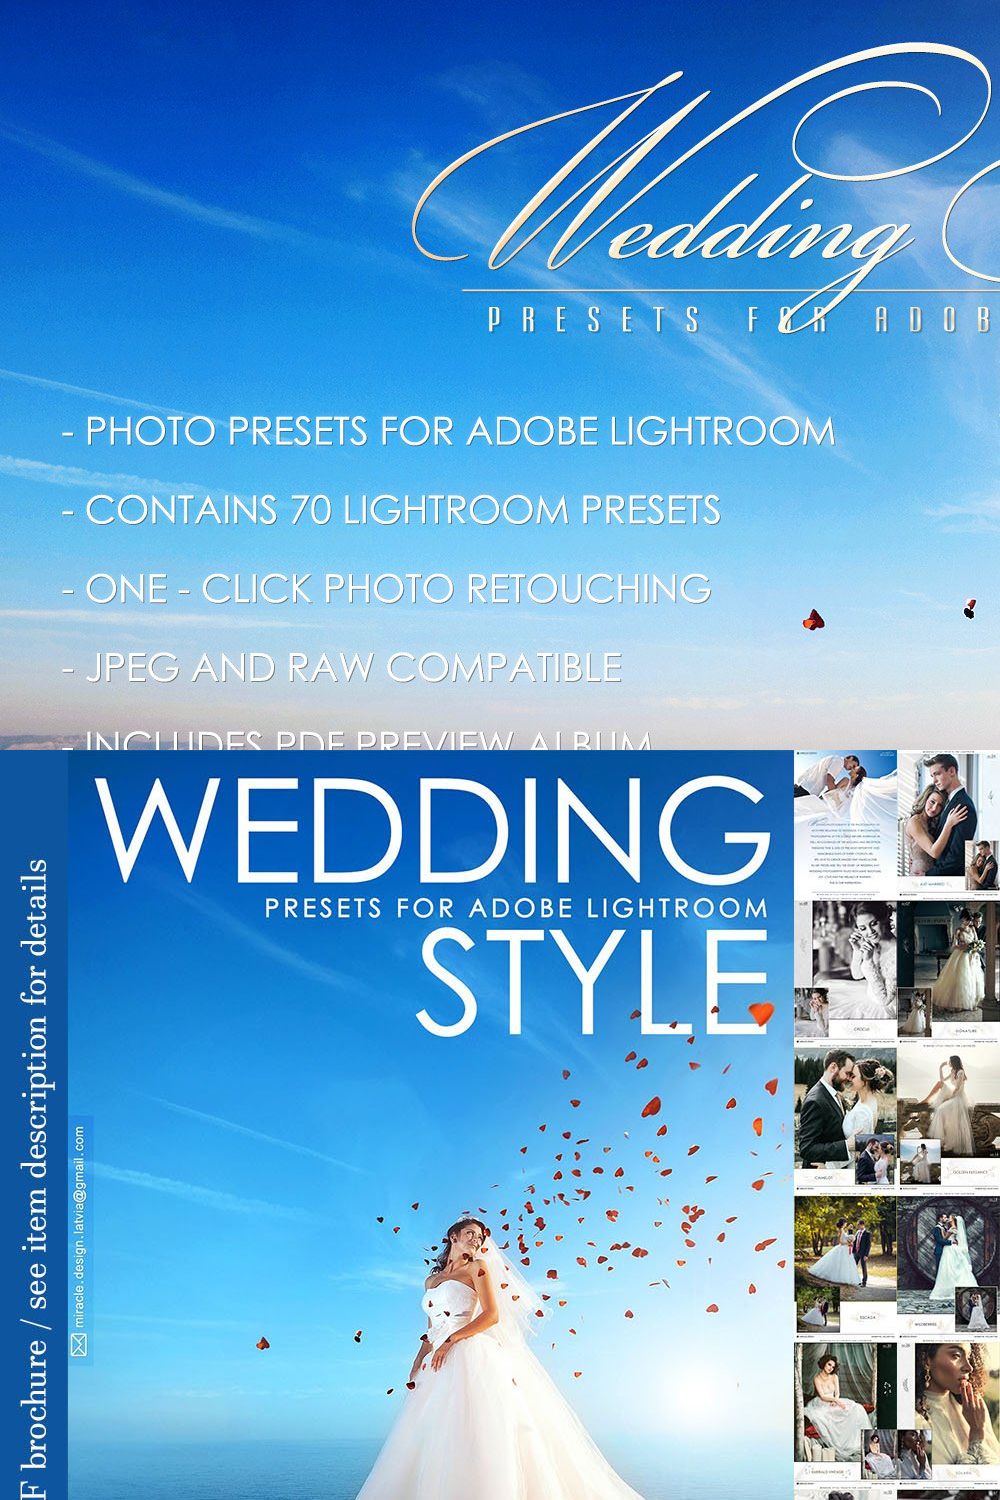 Presets for Lightroom / Wedding pinterest preview image.